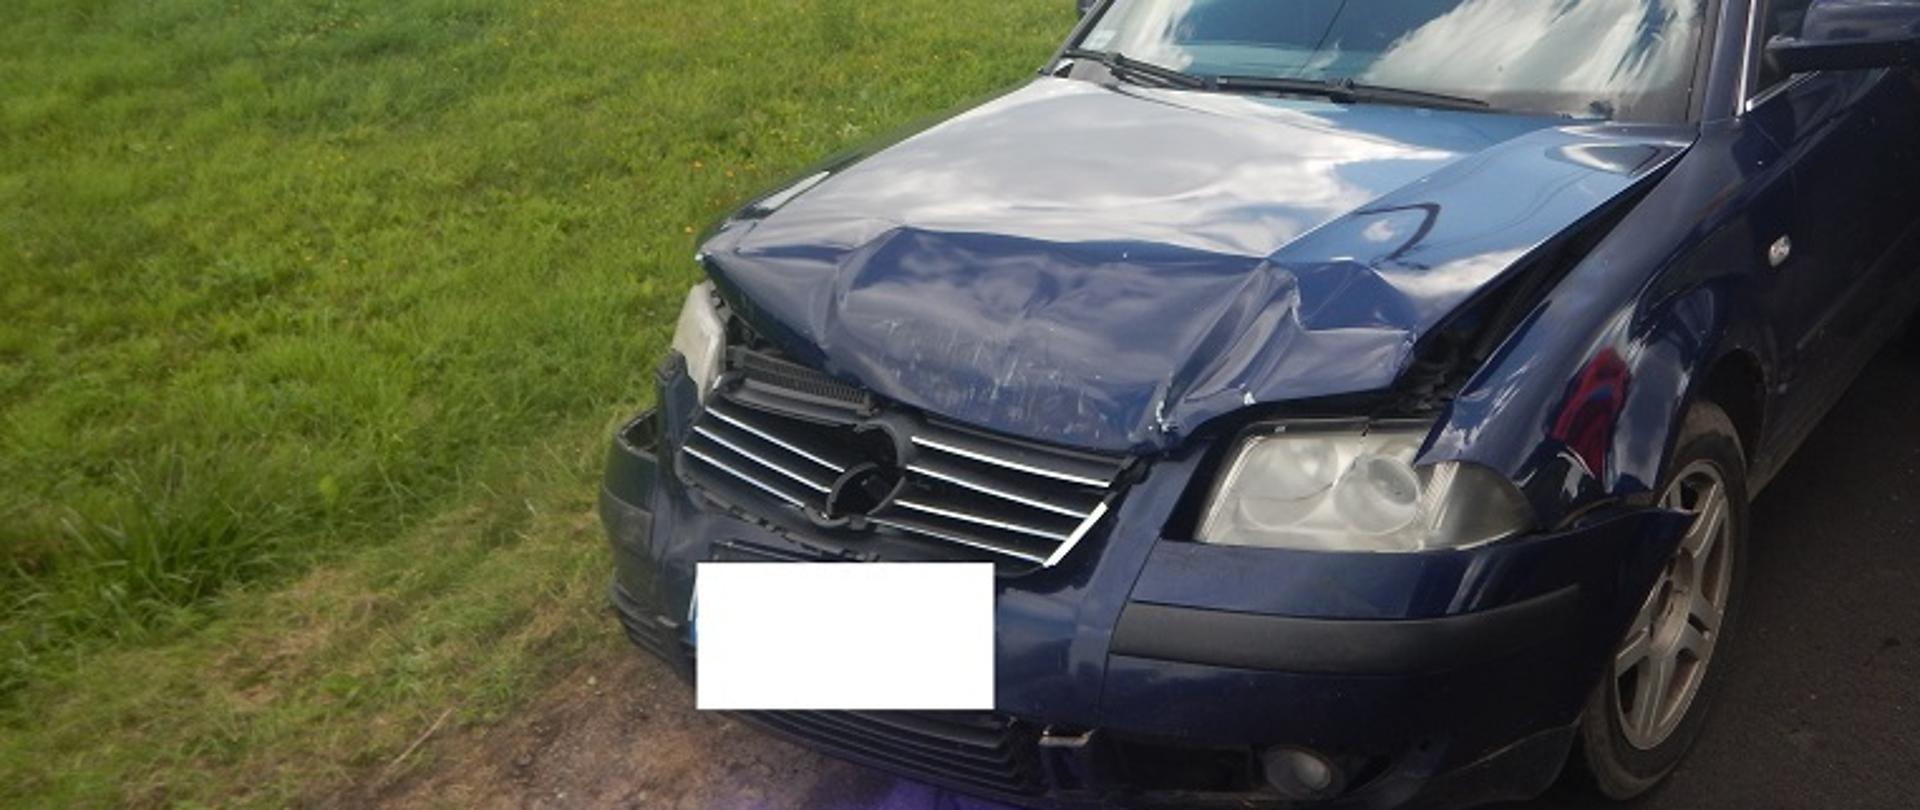 Zdjęcie przedstawia samochód osobowy po wypadku drogowym